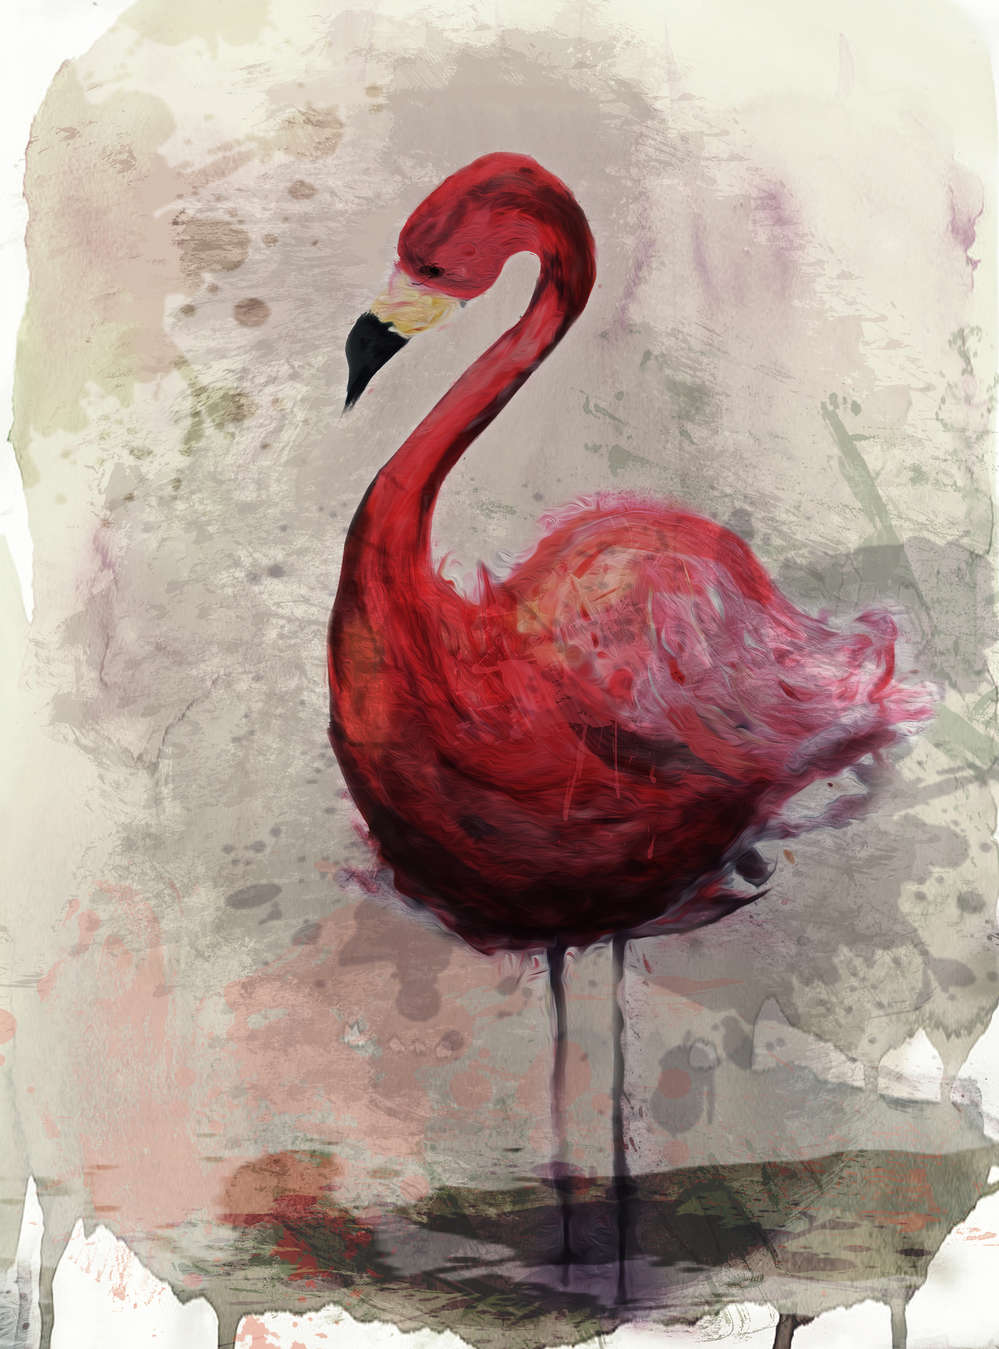             Aquarel muurschildering met flamingo motief in tekenstijl
        